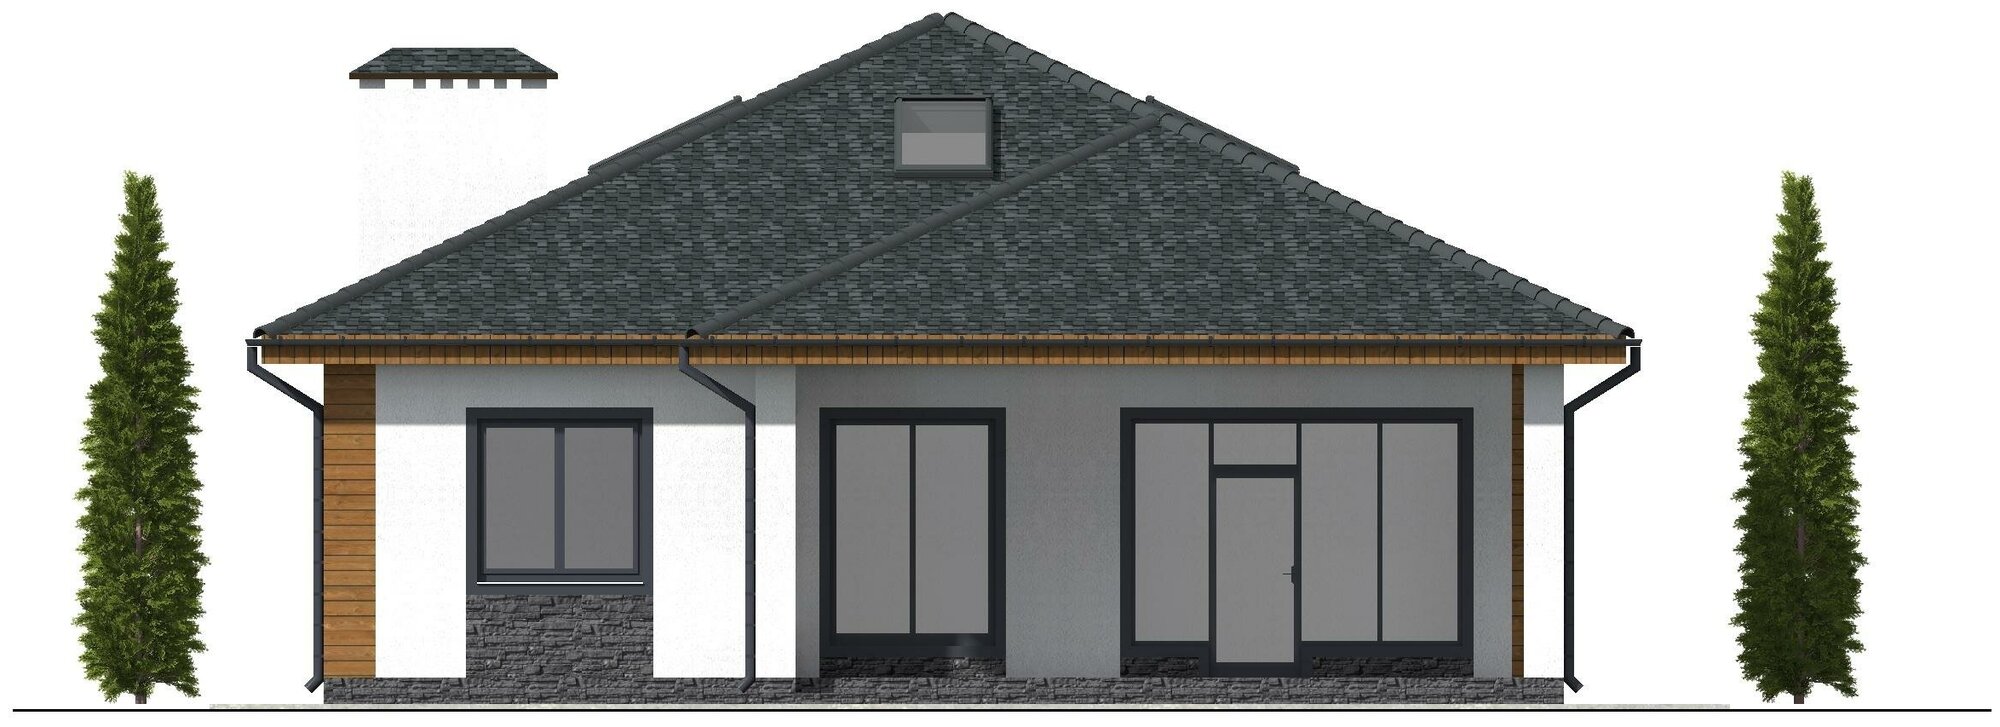 Готовый проект одноэтажного дома без гаража из газобетонного блока с облицовкой из фасадных панелей площадью 151,2 кв.м - фотография № 9